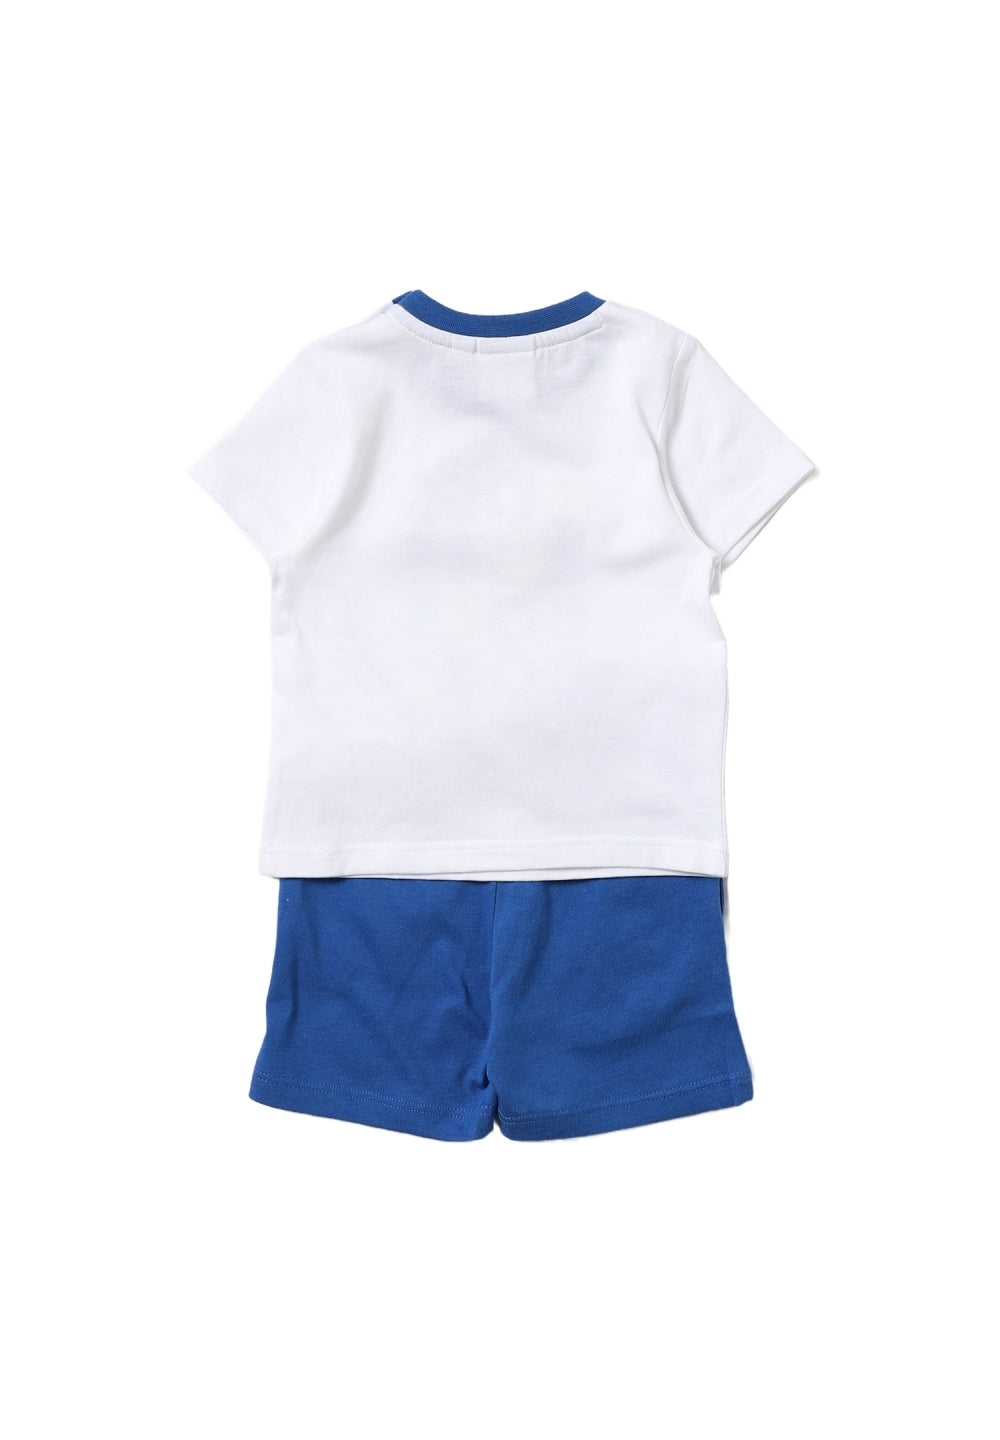 Weiß-blaues Outfit für Neugeborene